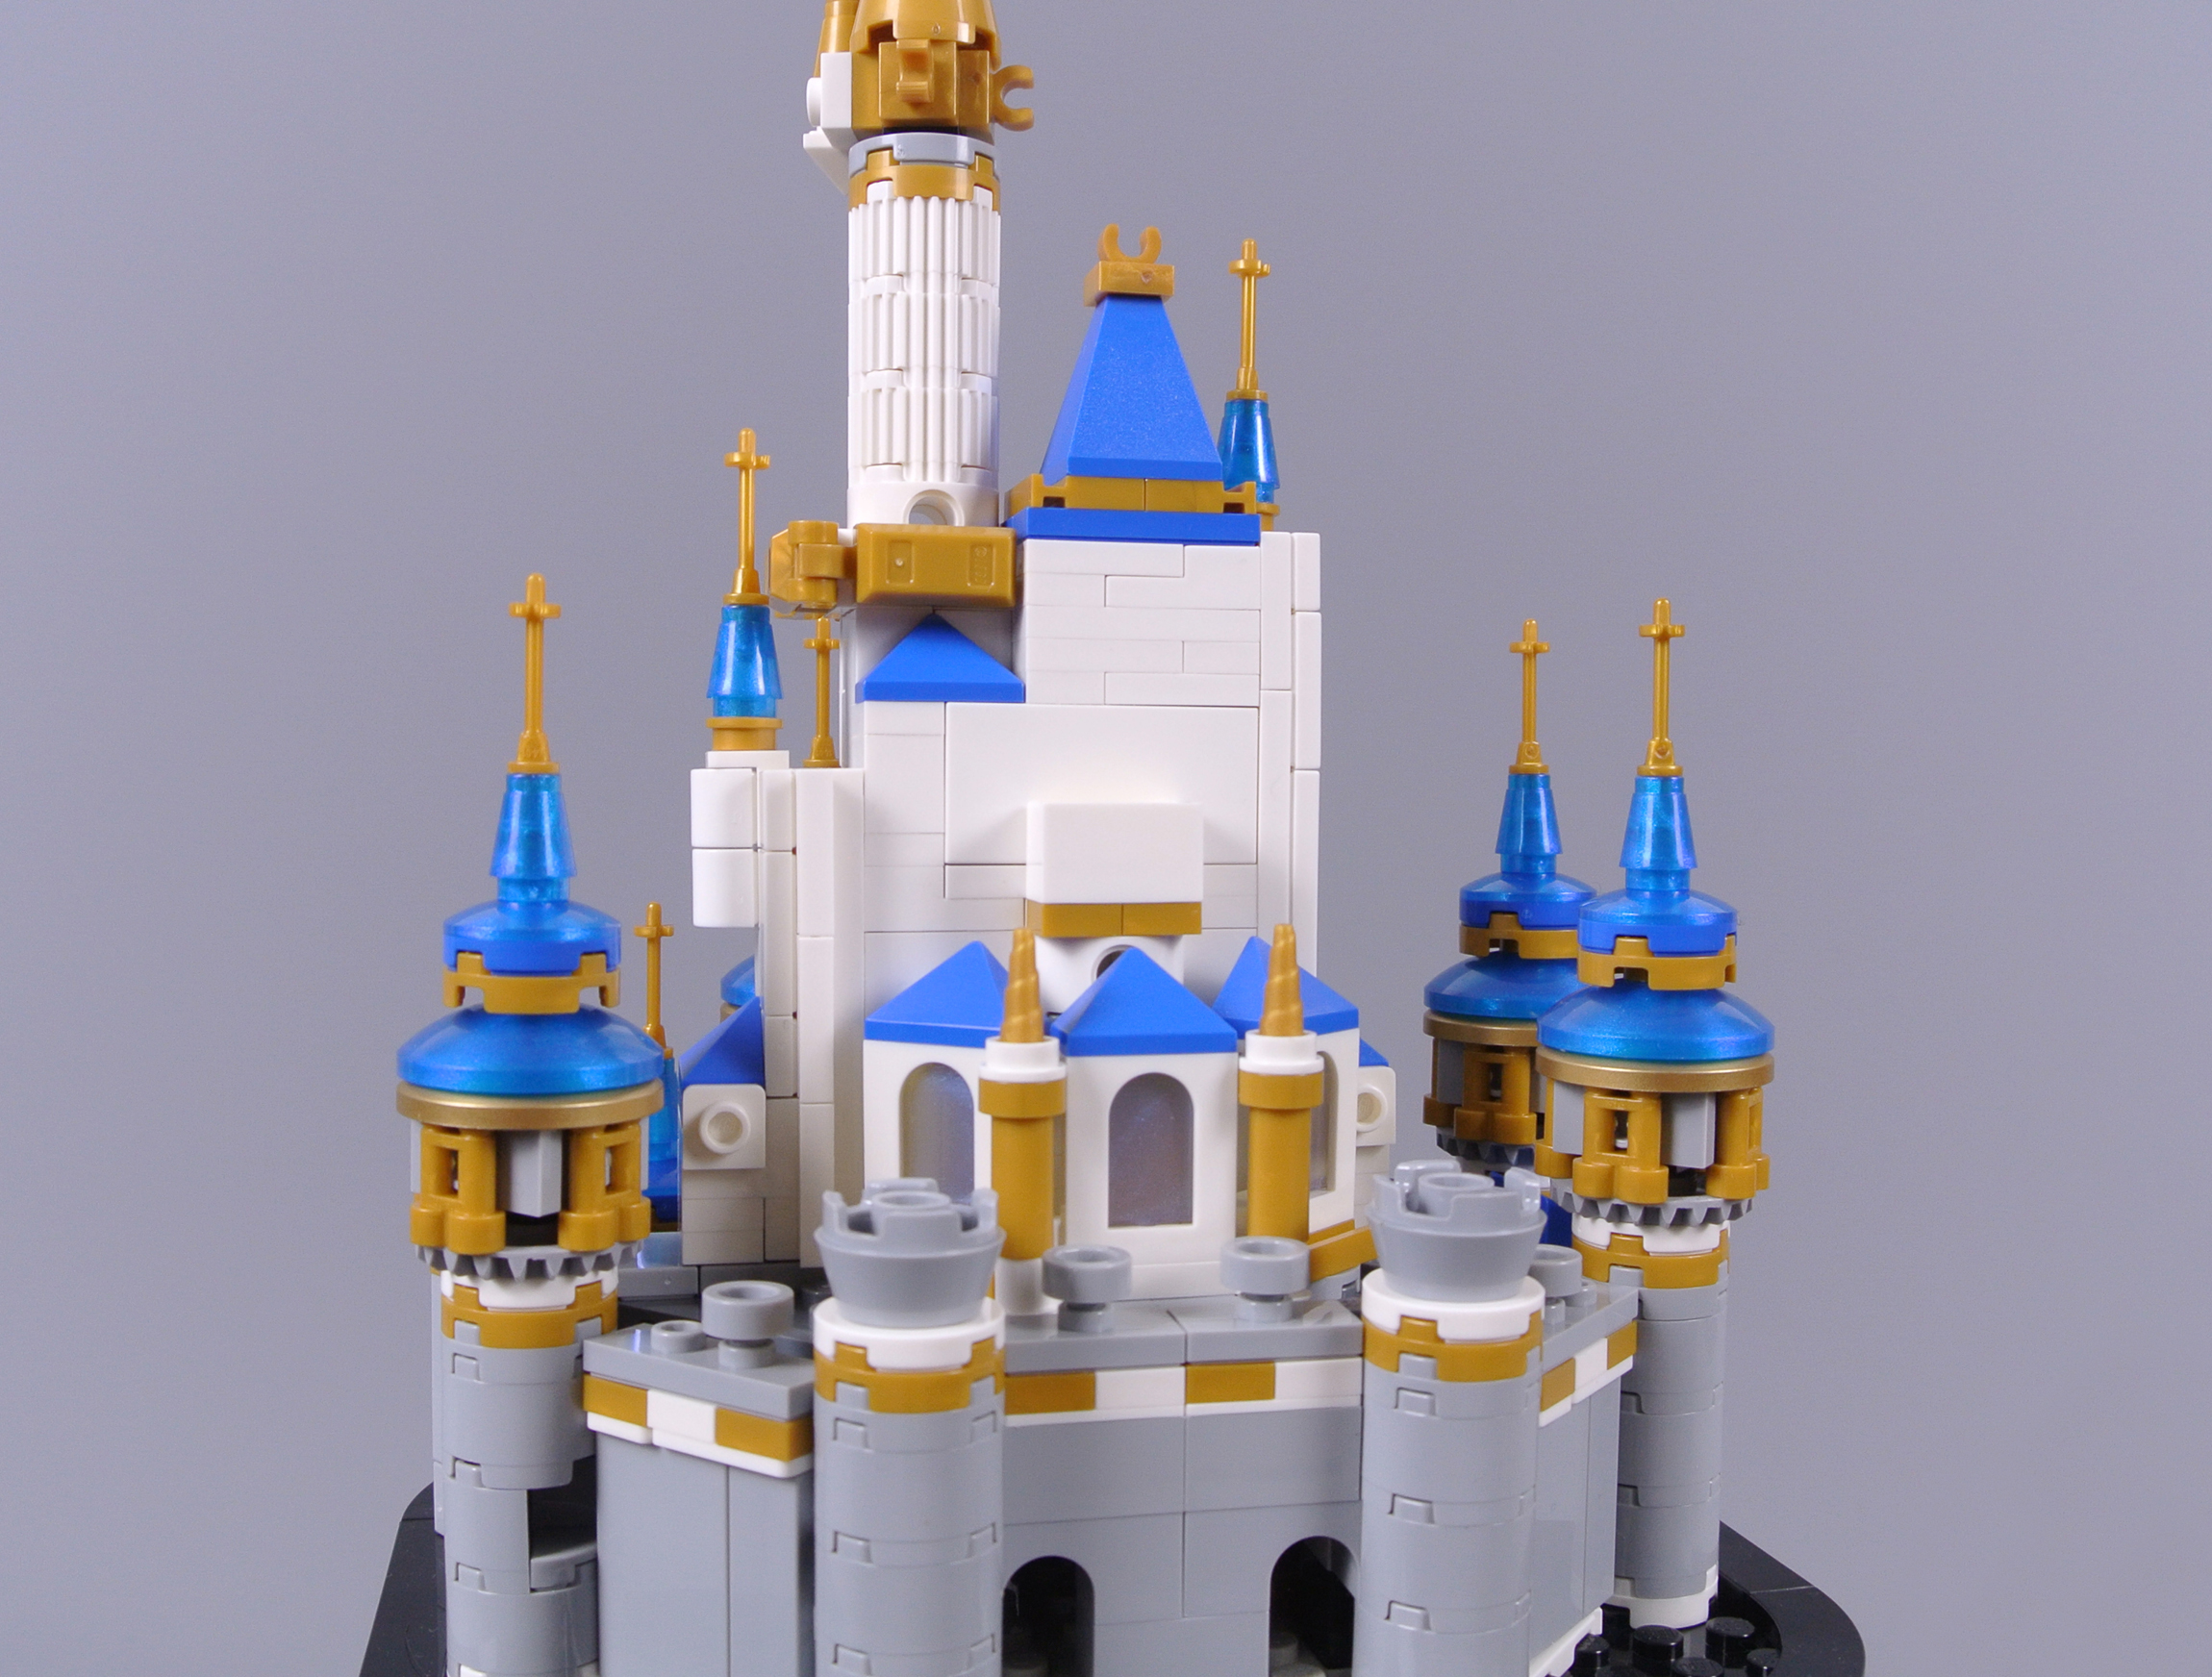 LEGO 40478 Mini Disney Castle review